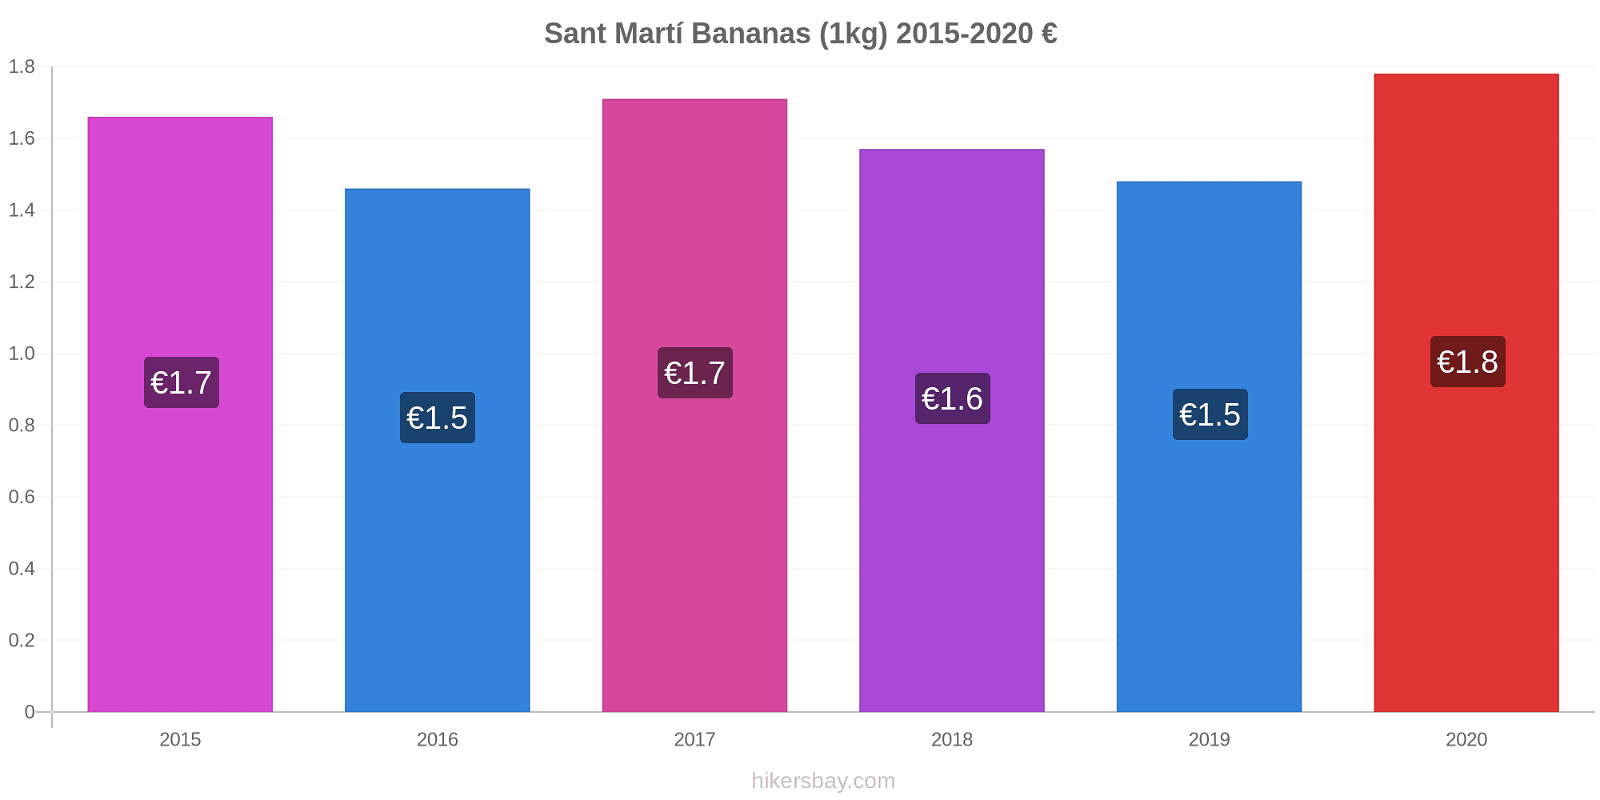 Sant Martí variação de preço Banana (1kg) hikersbay.com